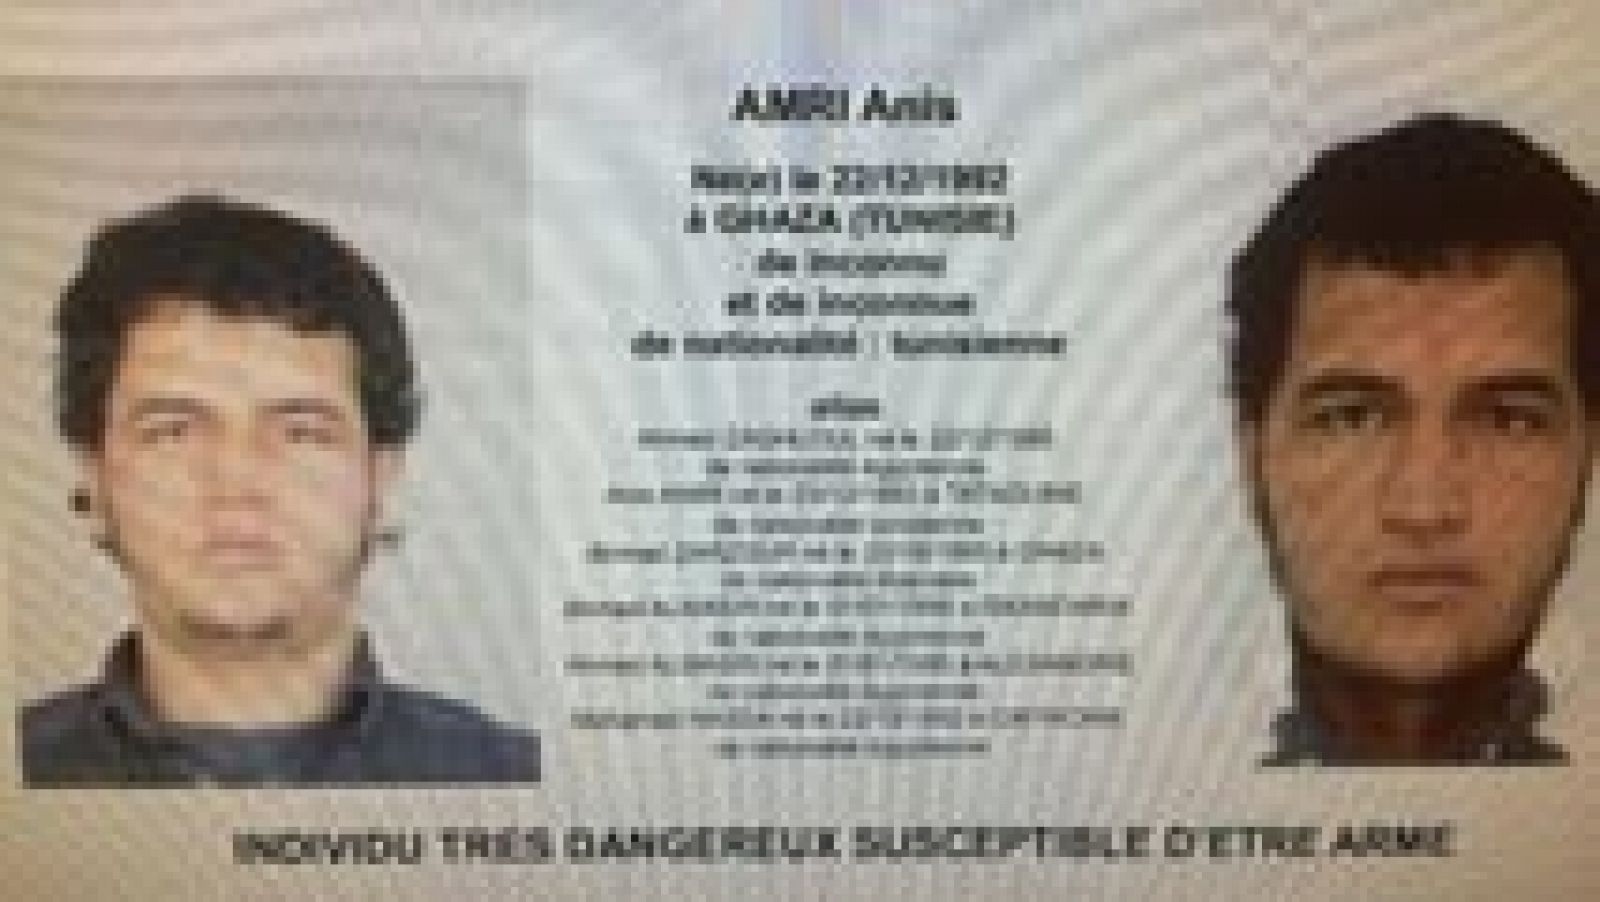 Atentado en Berlín - La Policía alemana registra dos viviendas en busca del Amis Amri